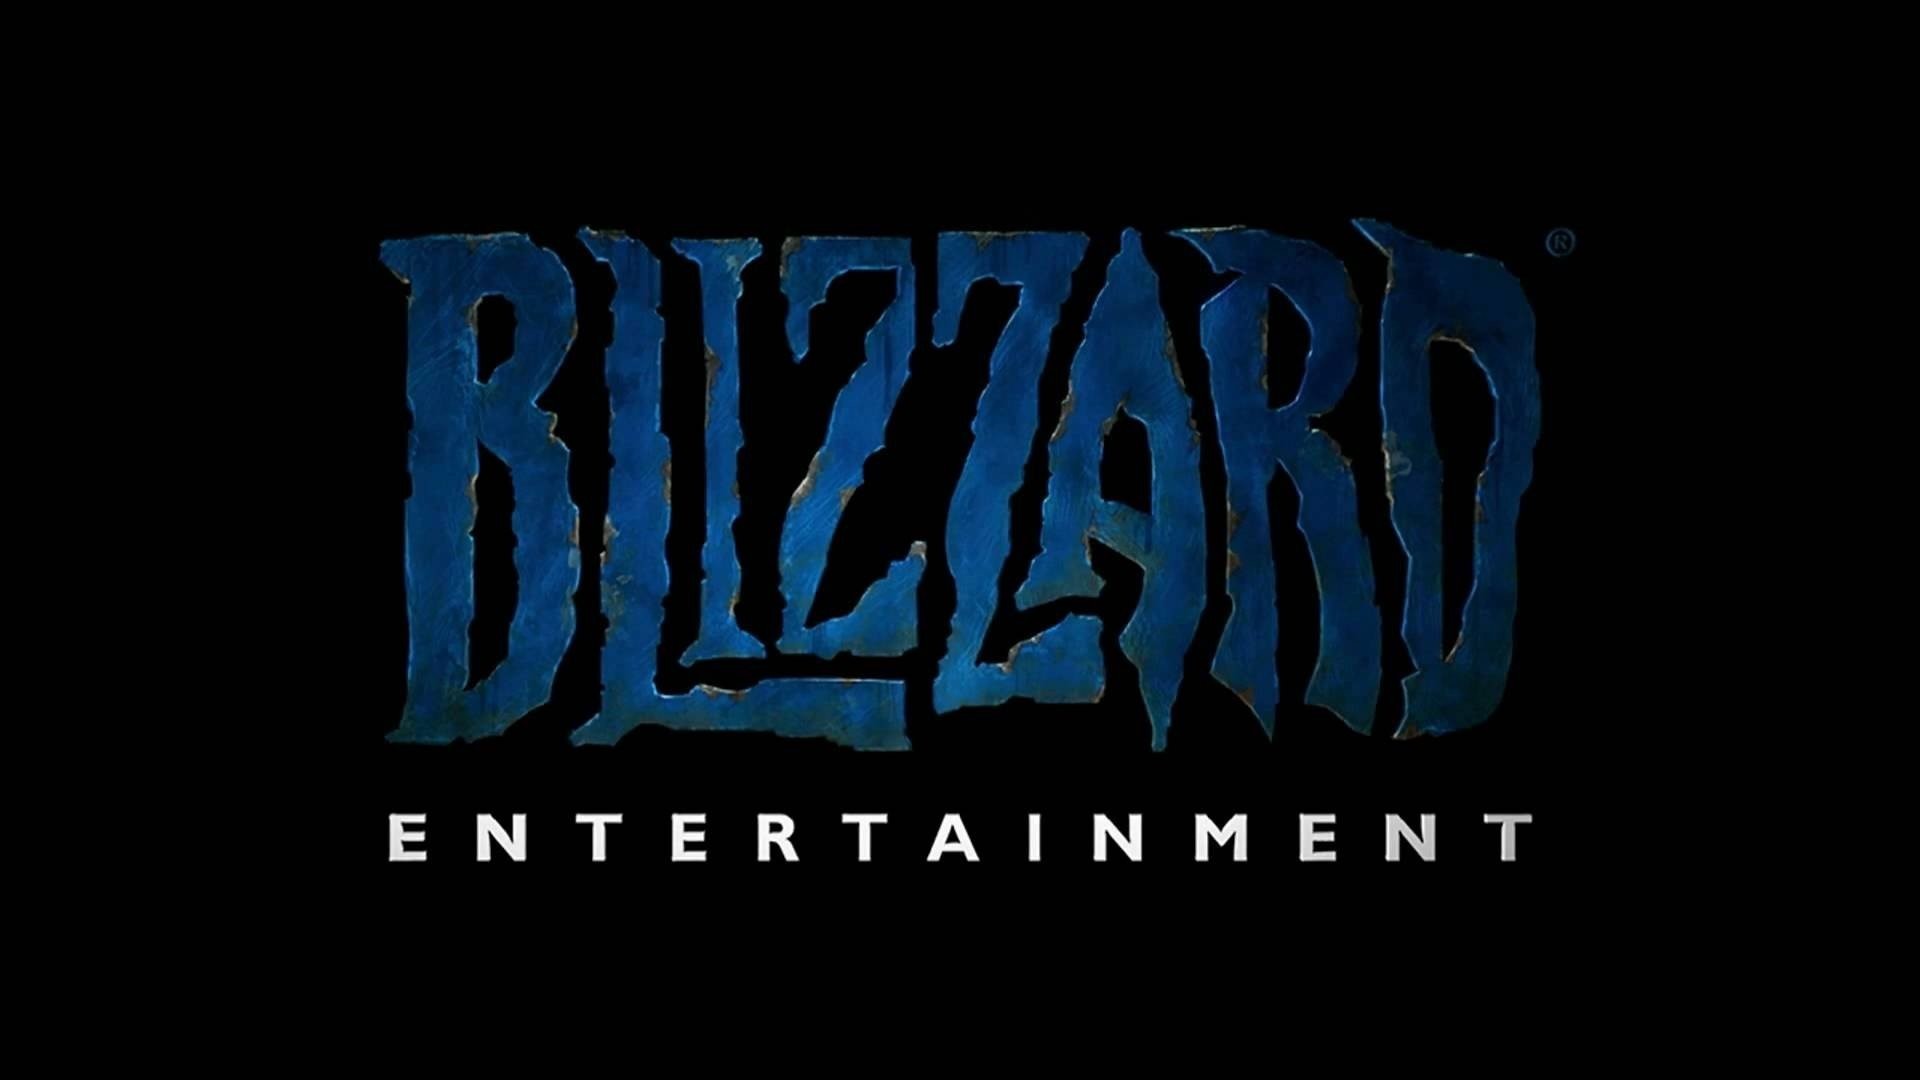 ประธาน Blizzard ยืนยัน! บริษัทไม่ทำเกม NFT